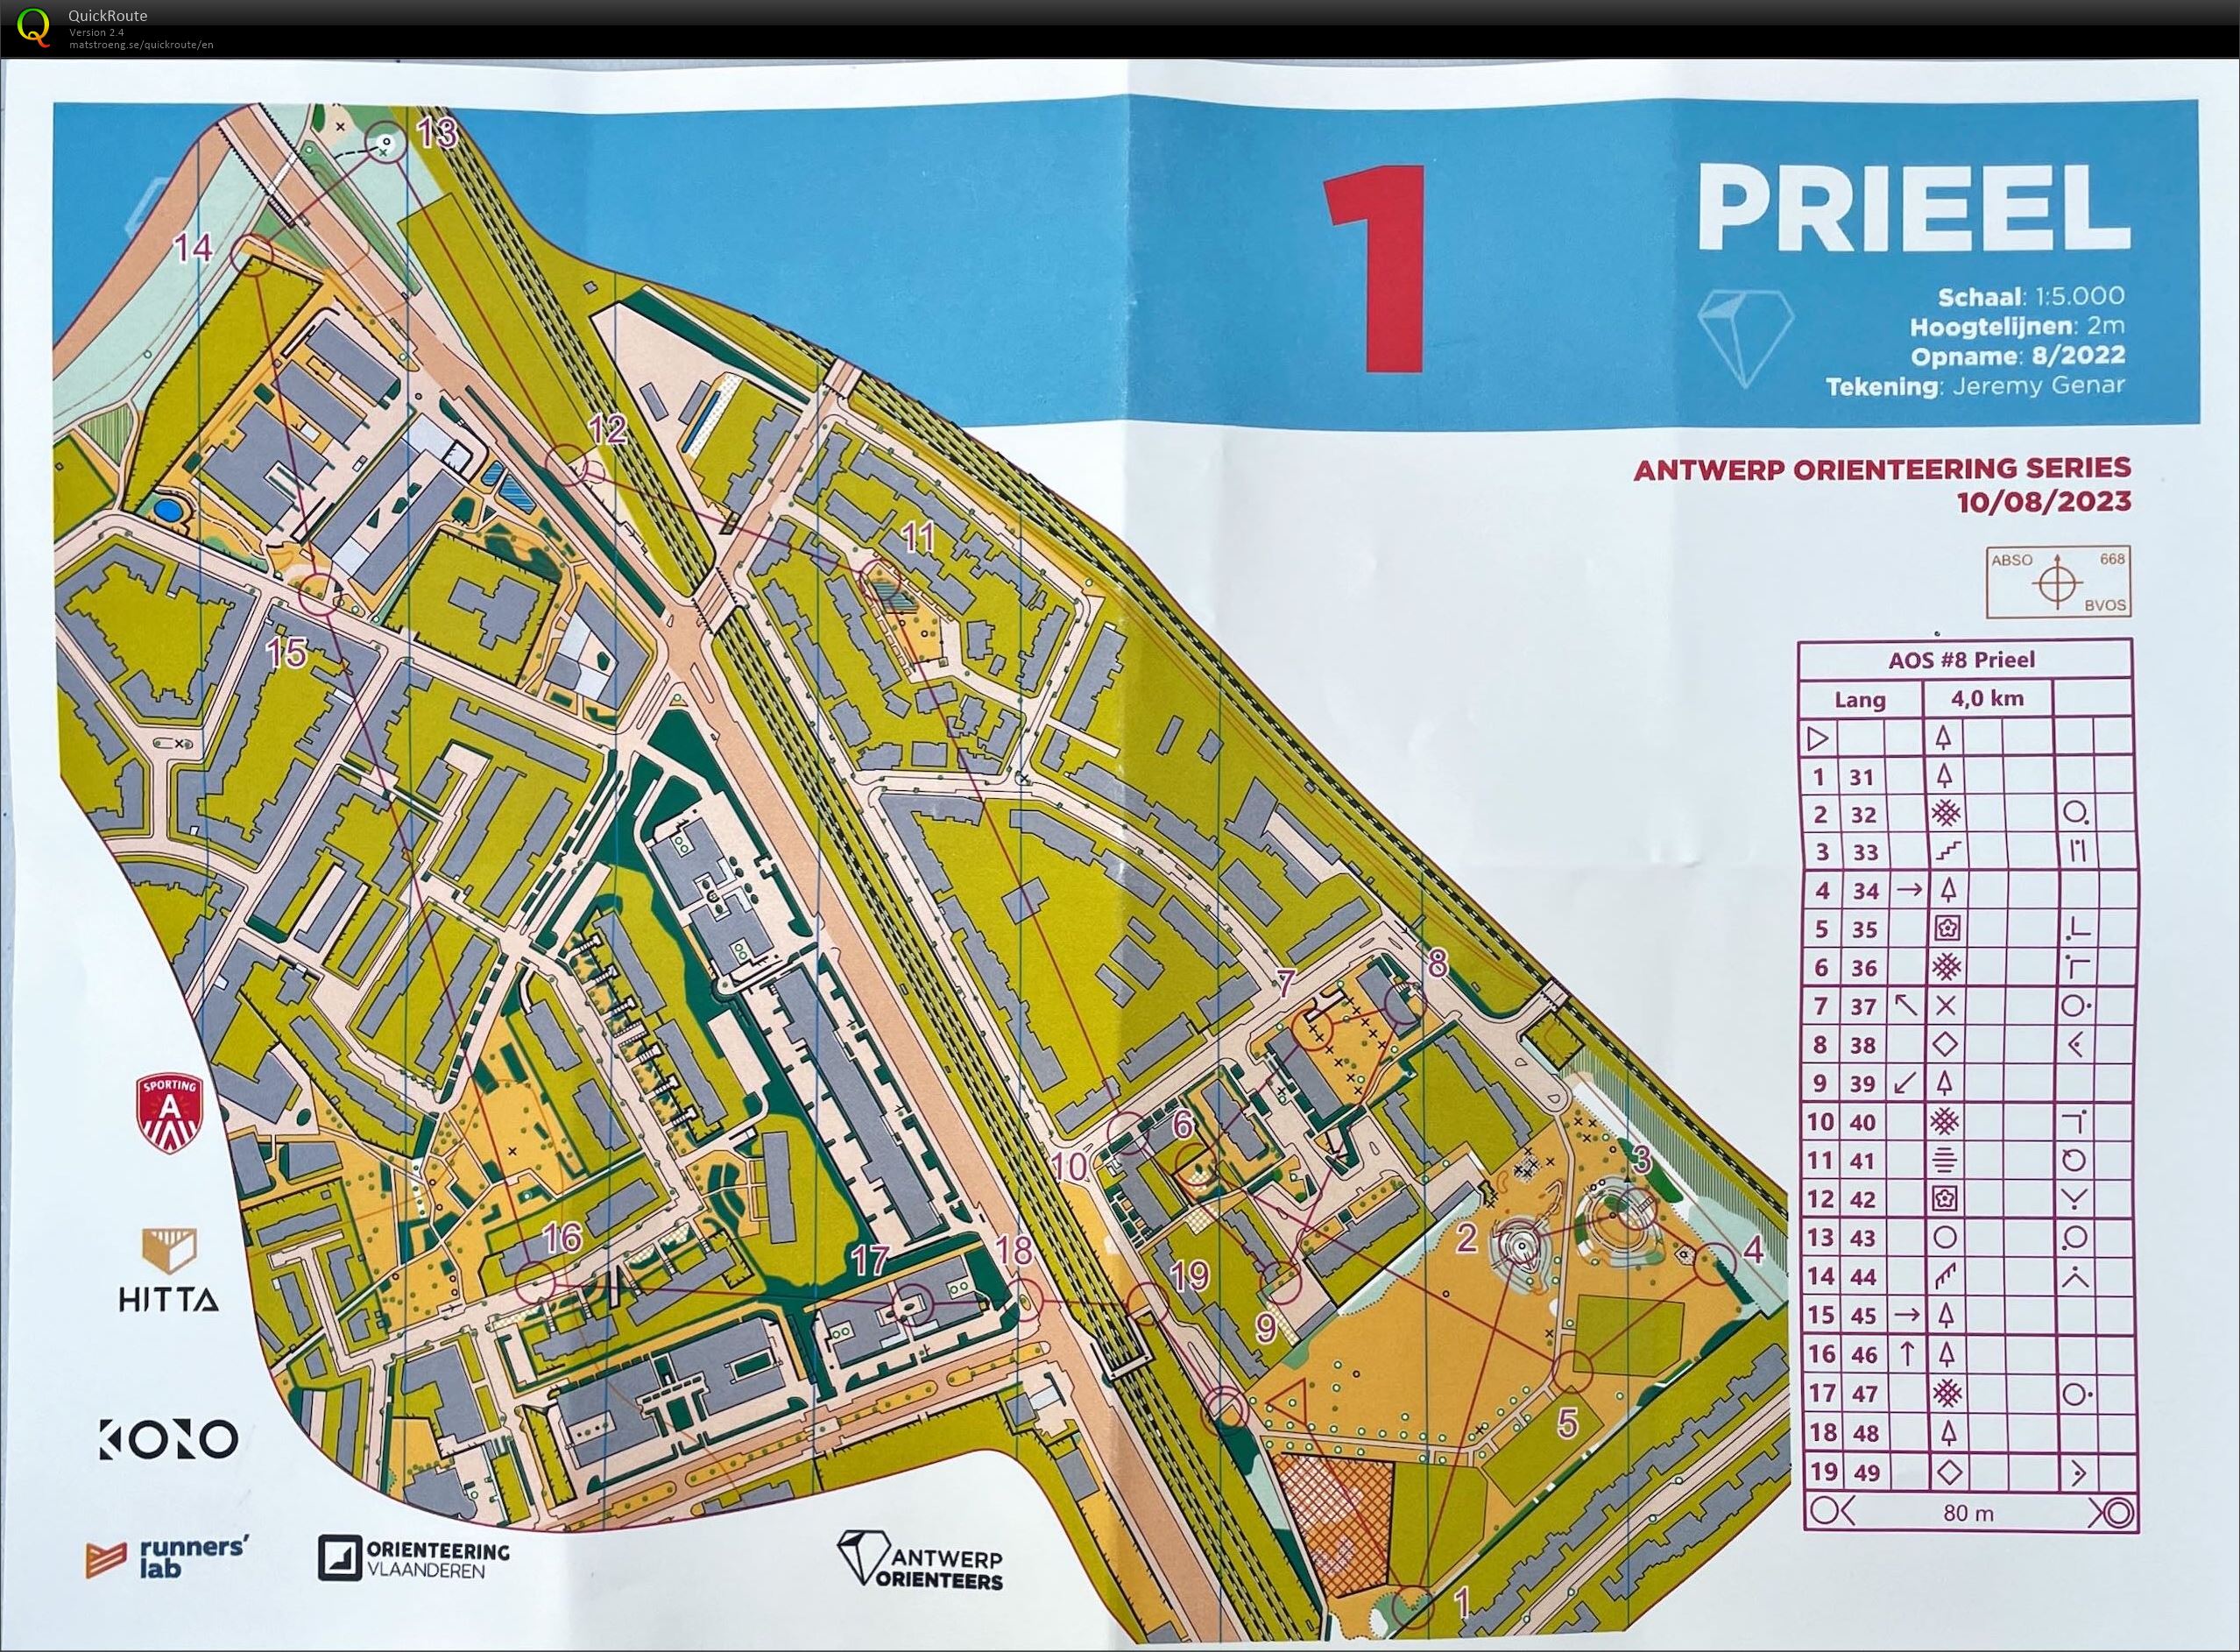 Antwerp Orienteering Series - Prieel - Lang (10/08/2023)